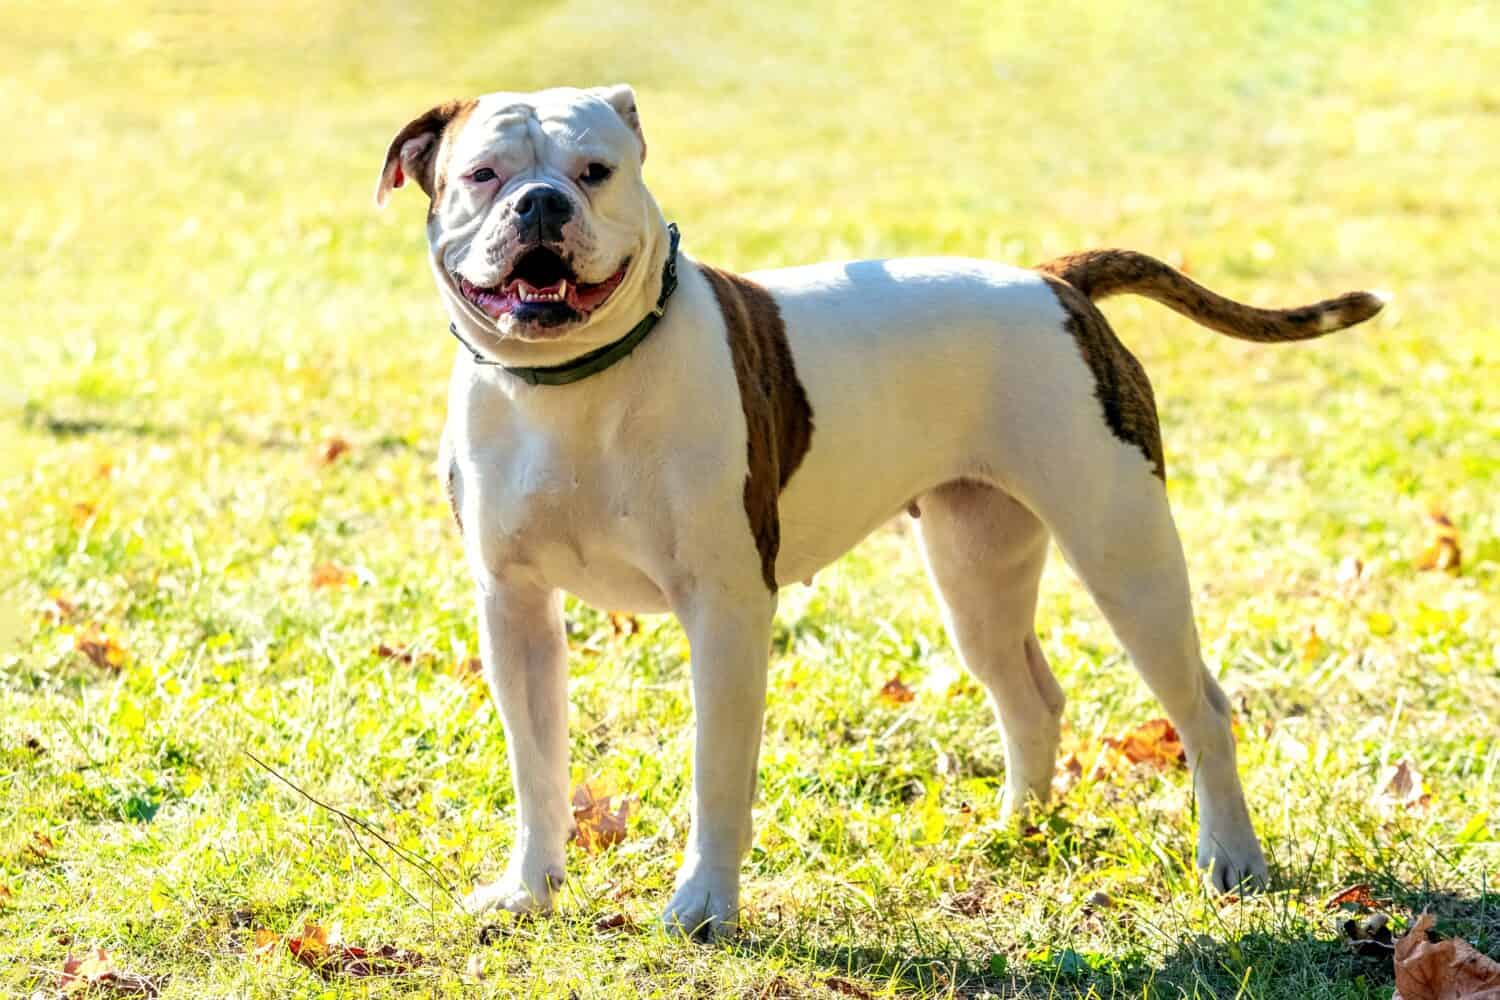 Cane di razza Bulldog americano al guinzaglio in tempo soleggiato.  Ritratto di un cane